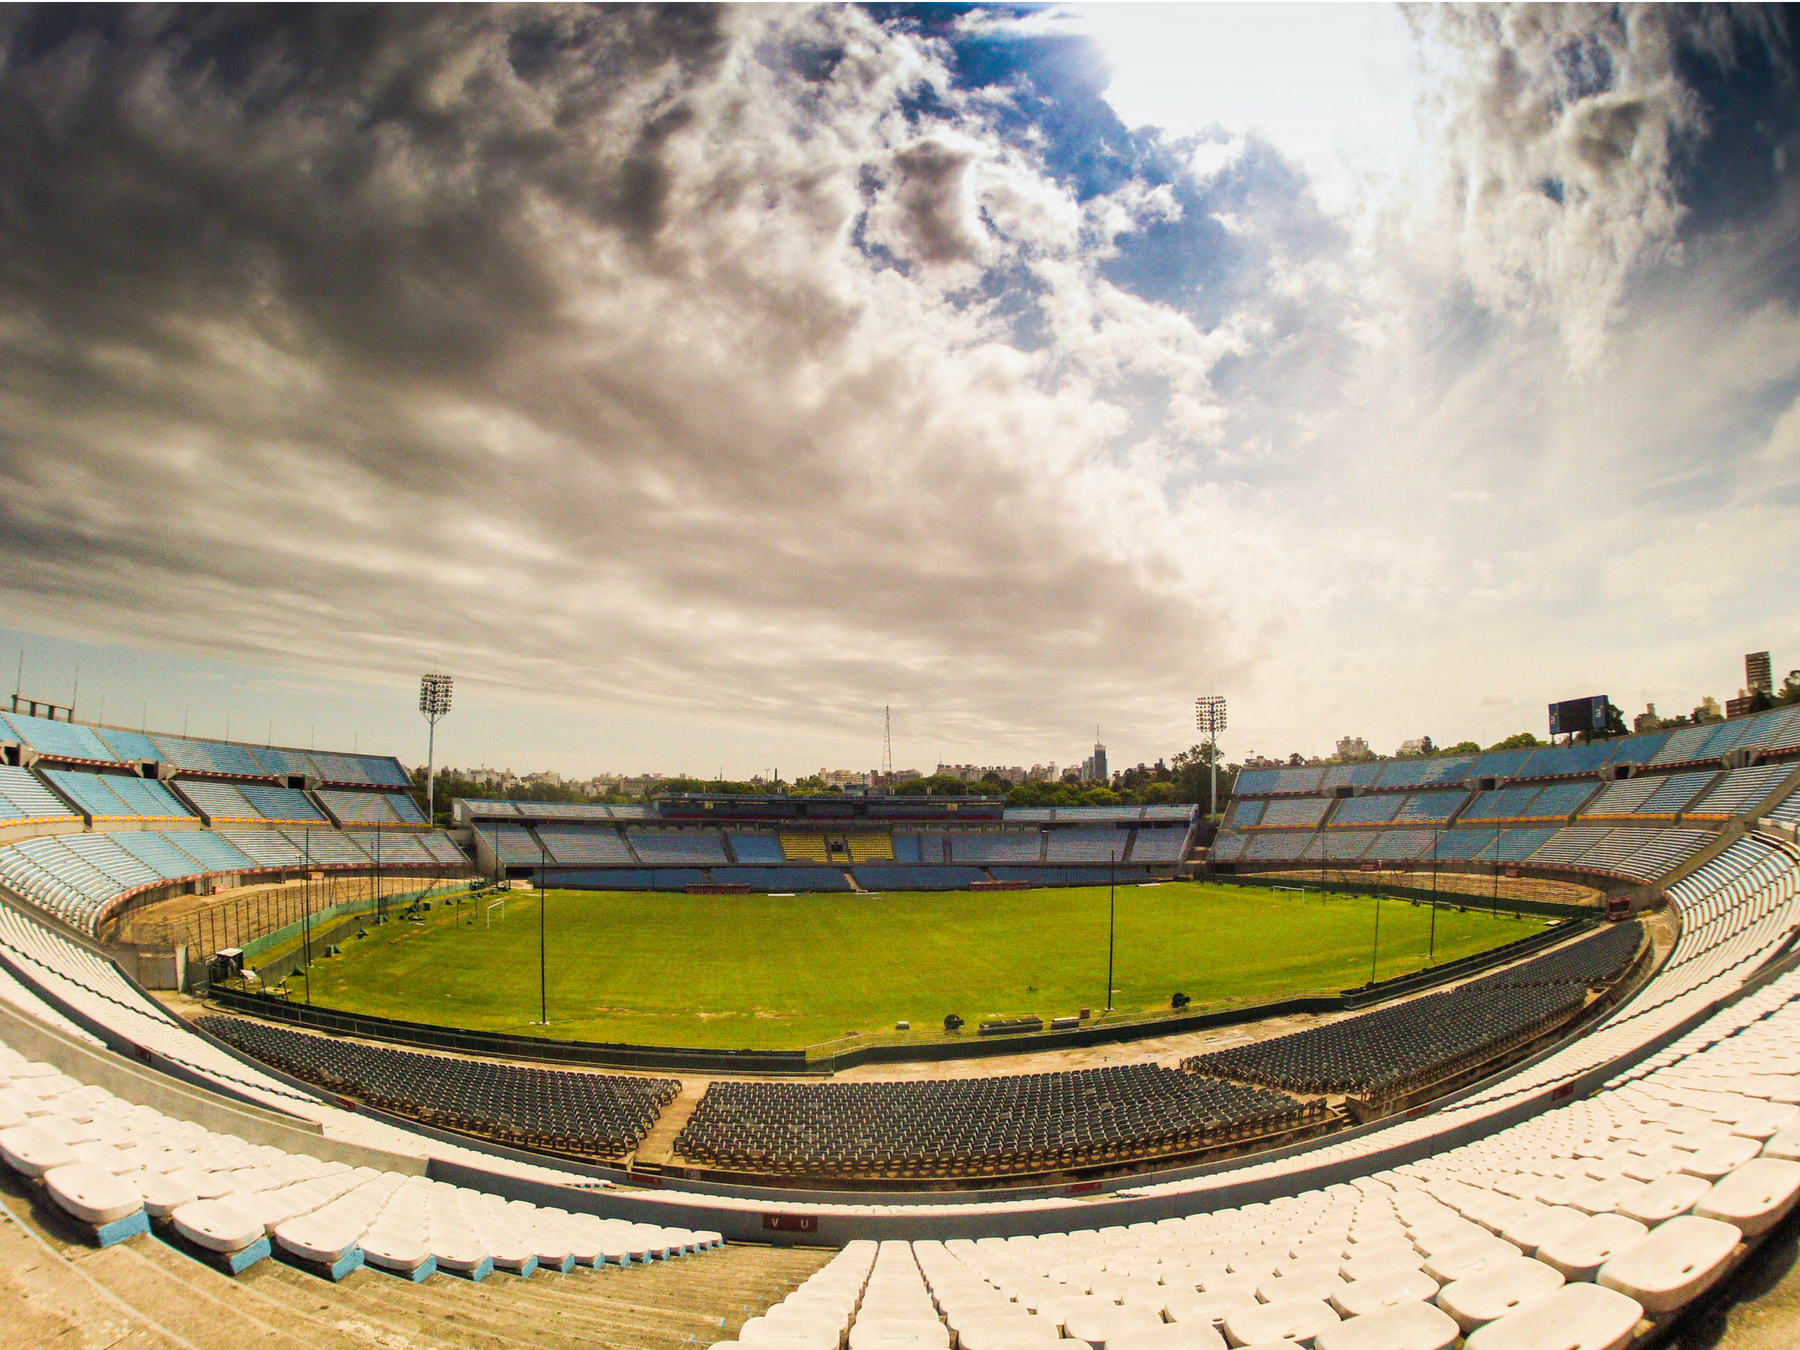 estádios-mais-legais-do-mundo-Calendário-da-copa-uruguai-1930 Os 20 estádios mais legais do mundo Calendário Copa 2018 